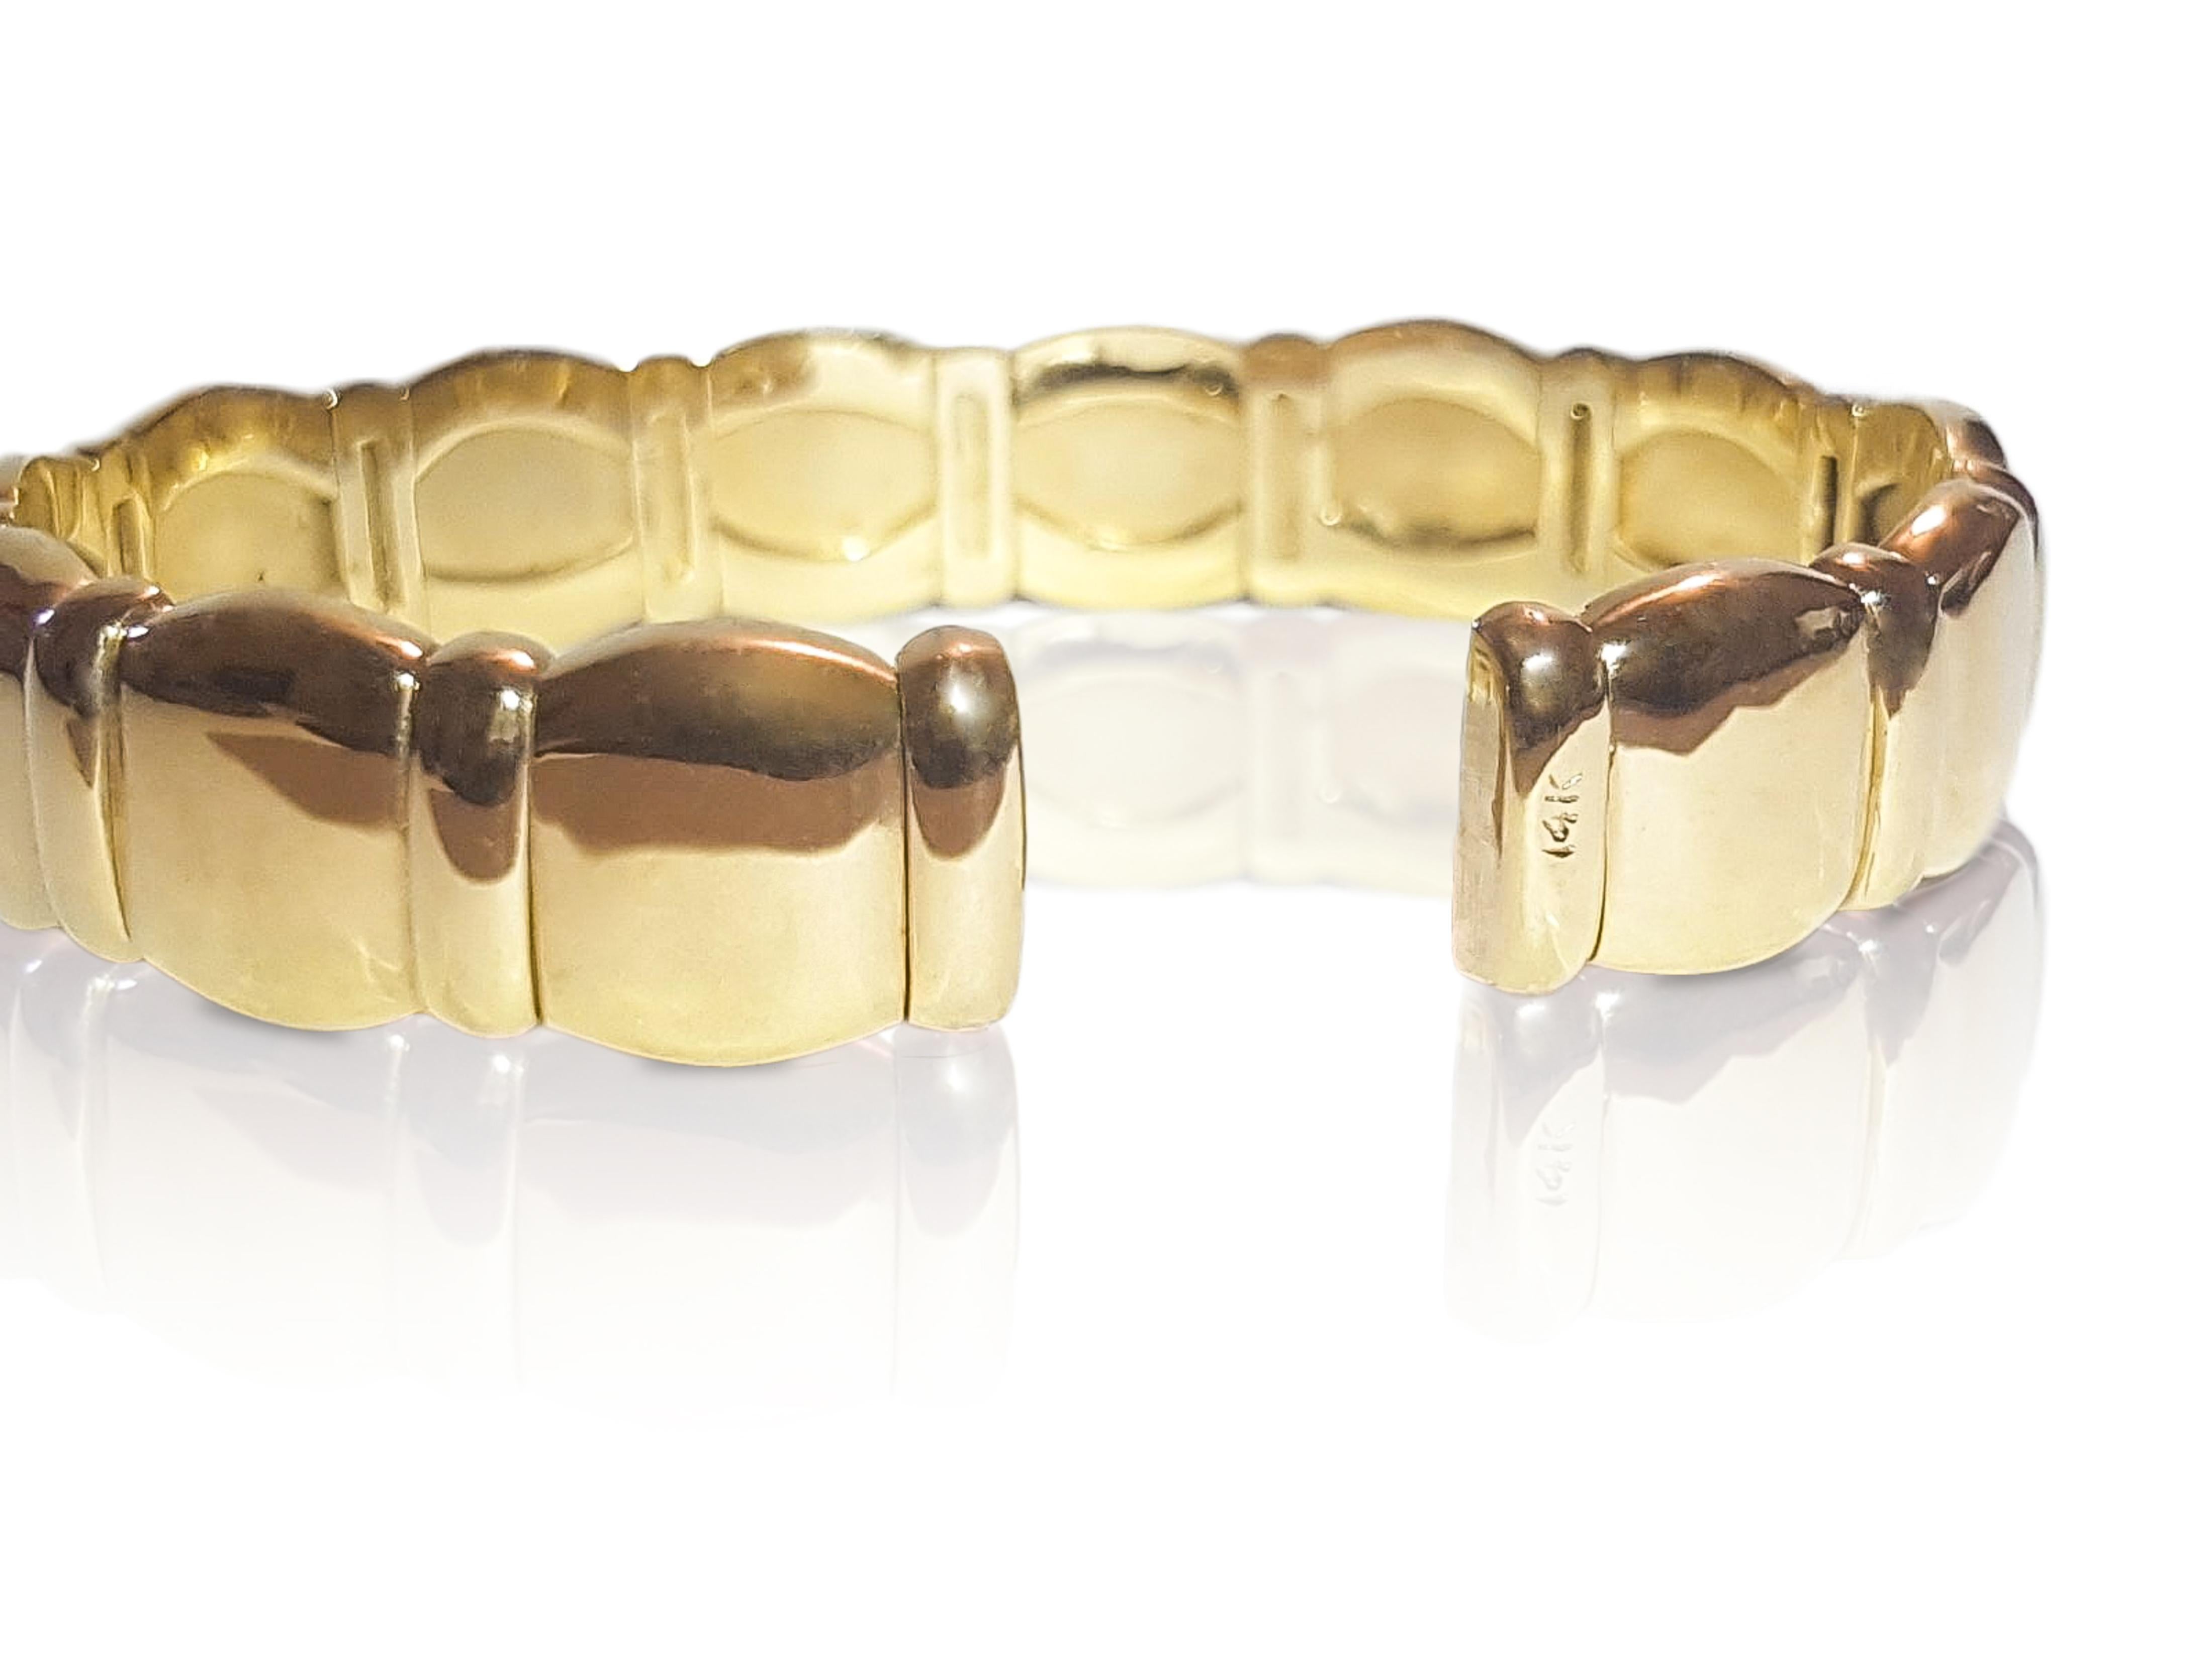 Brilliant Cut Cartier Style 14K Yellow Gold Diamond Bracelet For Sale